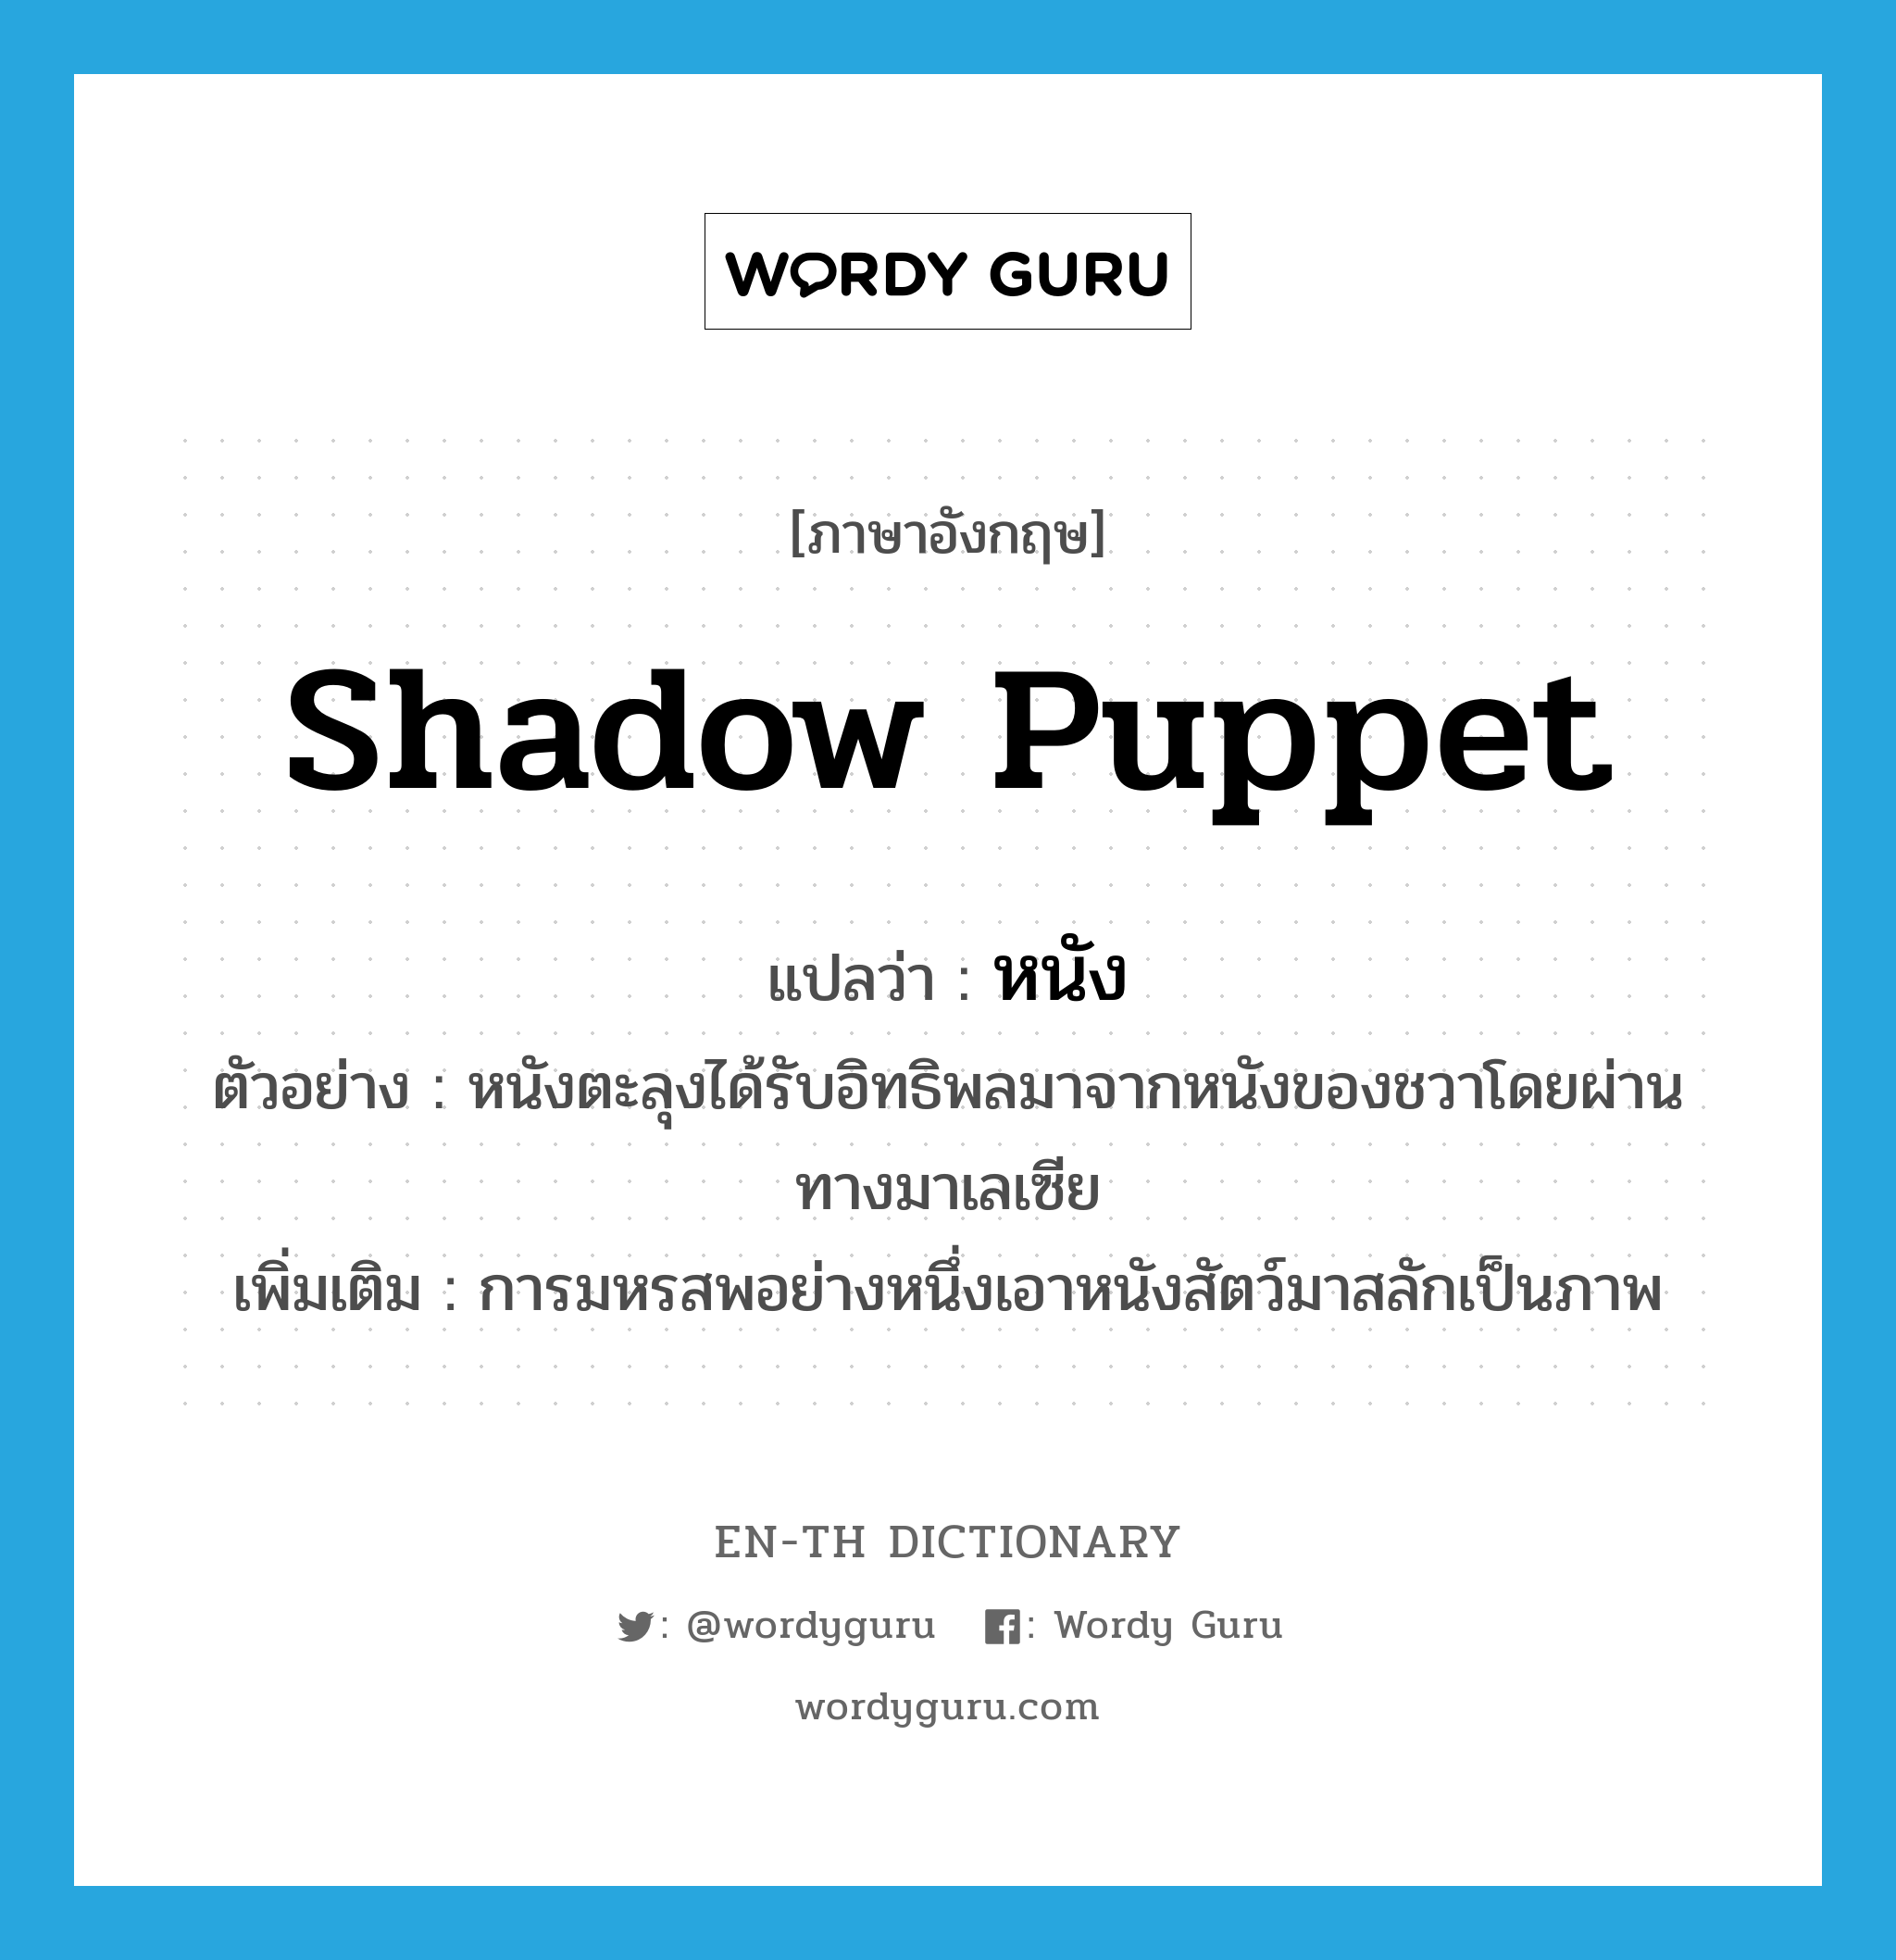 shadow puppet แปลว่า?, คำศัพท์ภาษาอังกฤษ shadow puppet แปลว่า หนัง ประเภท N ตัวอย่าง หนังตะลุงได้รับอิทธิพลมาจากหนังของชวาโดยผ่านทางมาเลเซีย เพิ่มเติม การมหรสพอย่างหนึ่งเอาหนังสัตว์มาสลักเป็นภาพ หมวด N